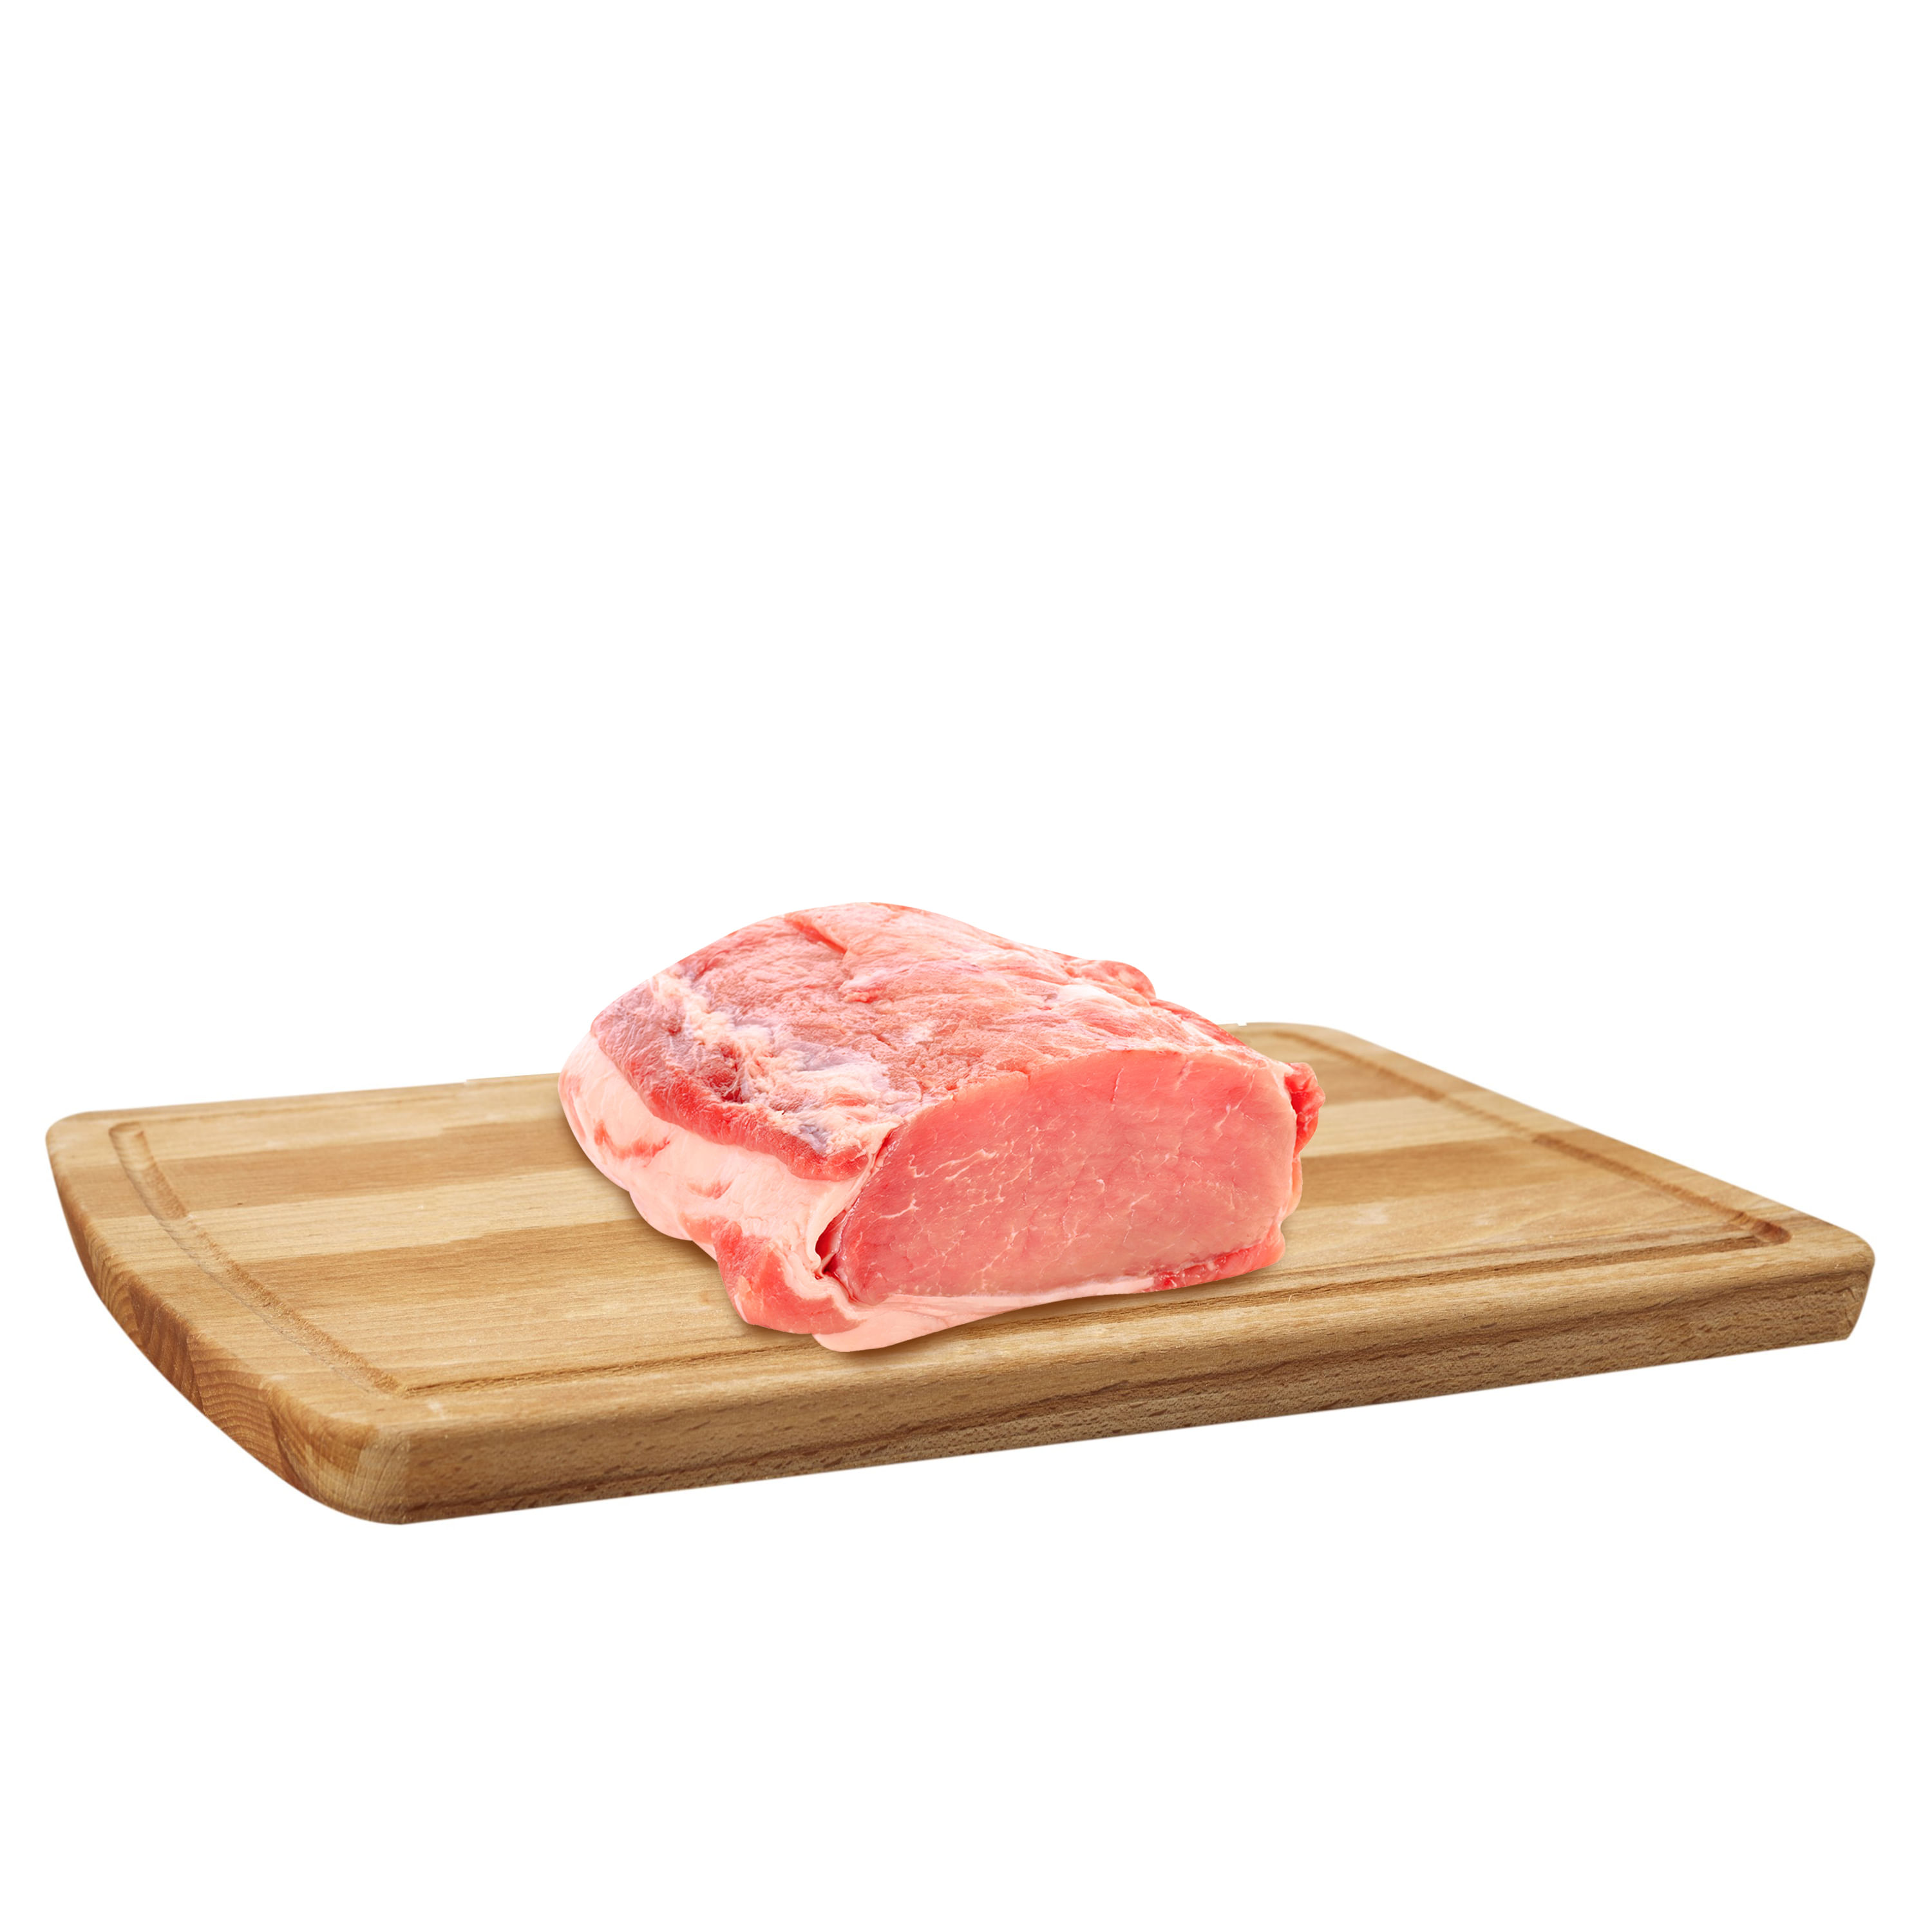 Cinta de Lomo de cerdo (1 kg)